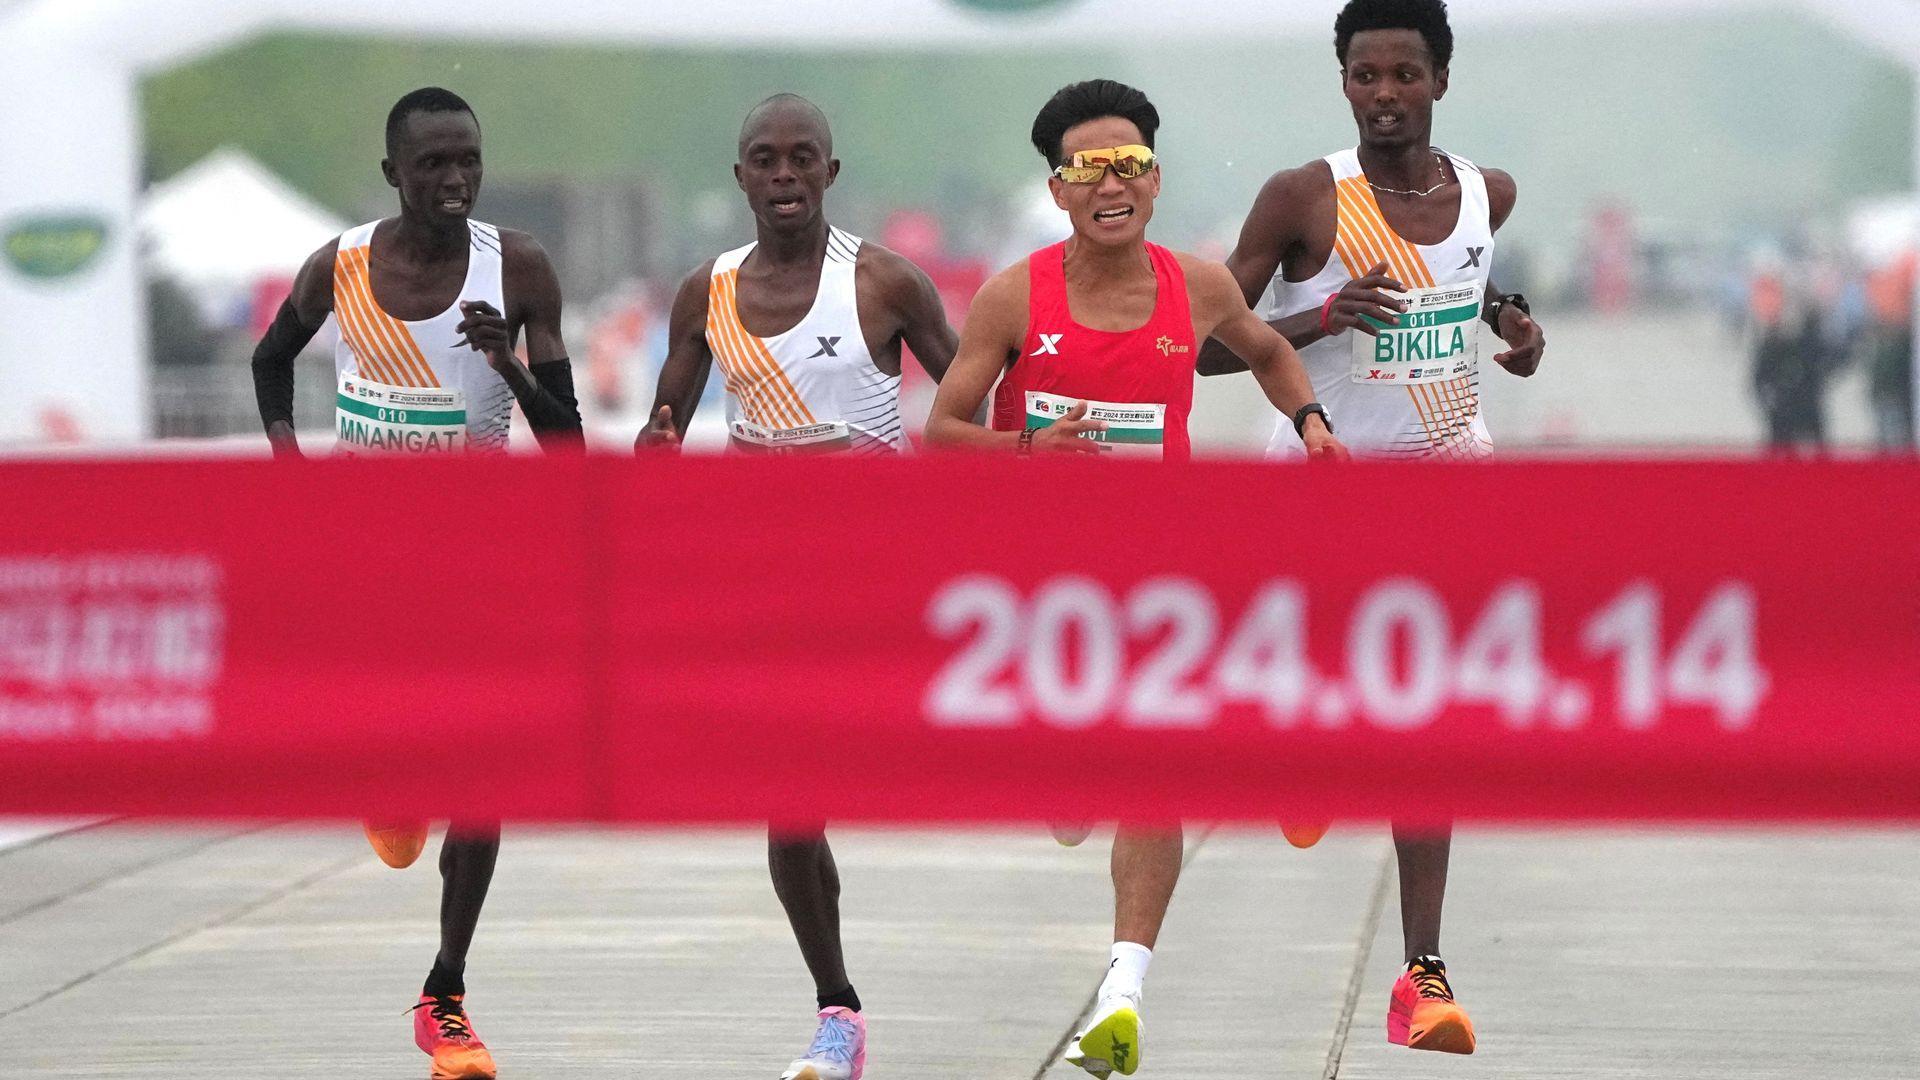 halbmarathon in peking: faire geste oder betrug? sieg von chinas champion he jie auf dem prüfstand